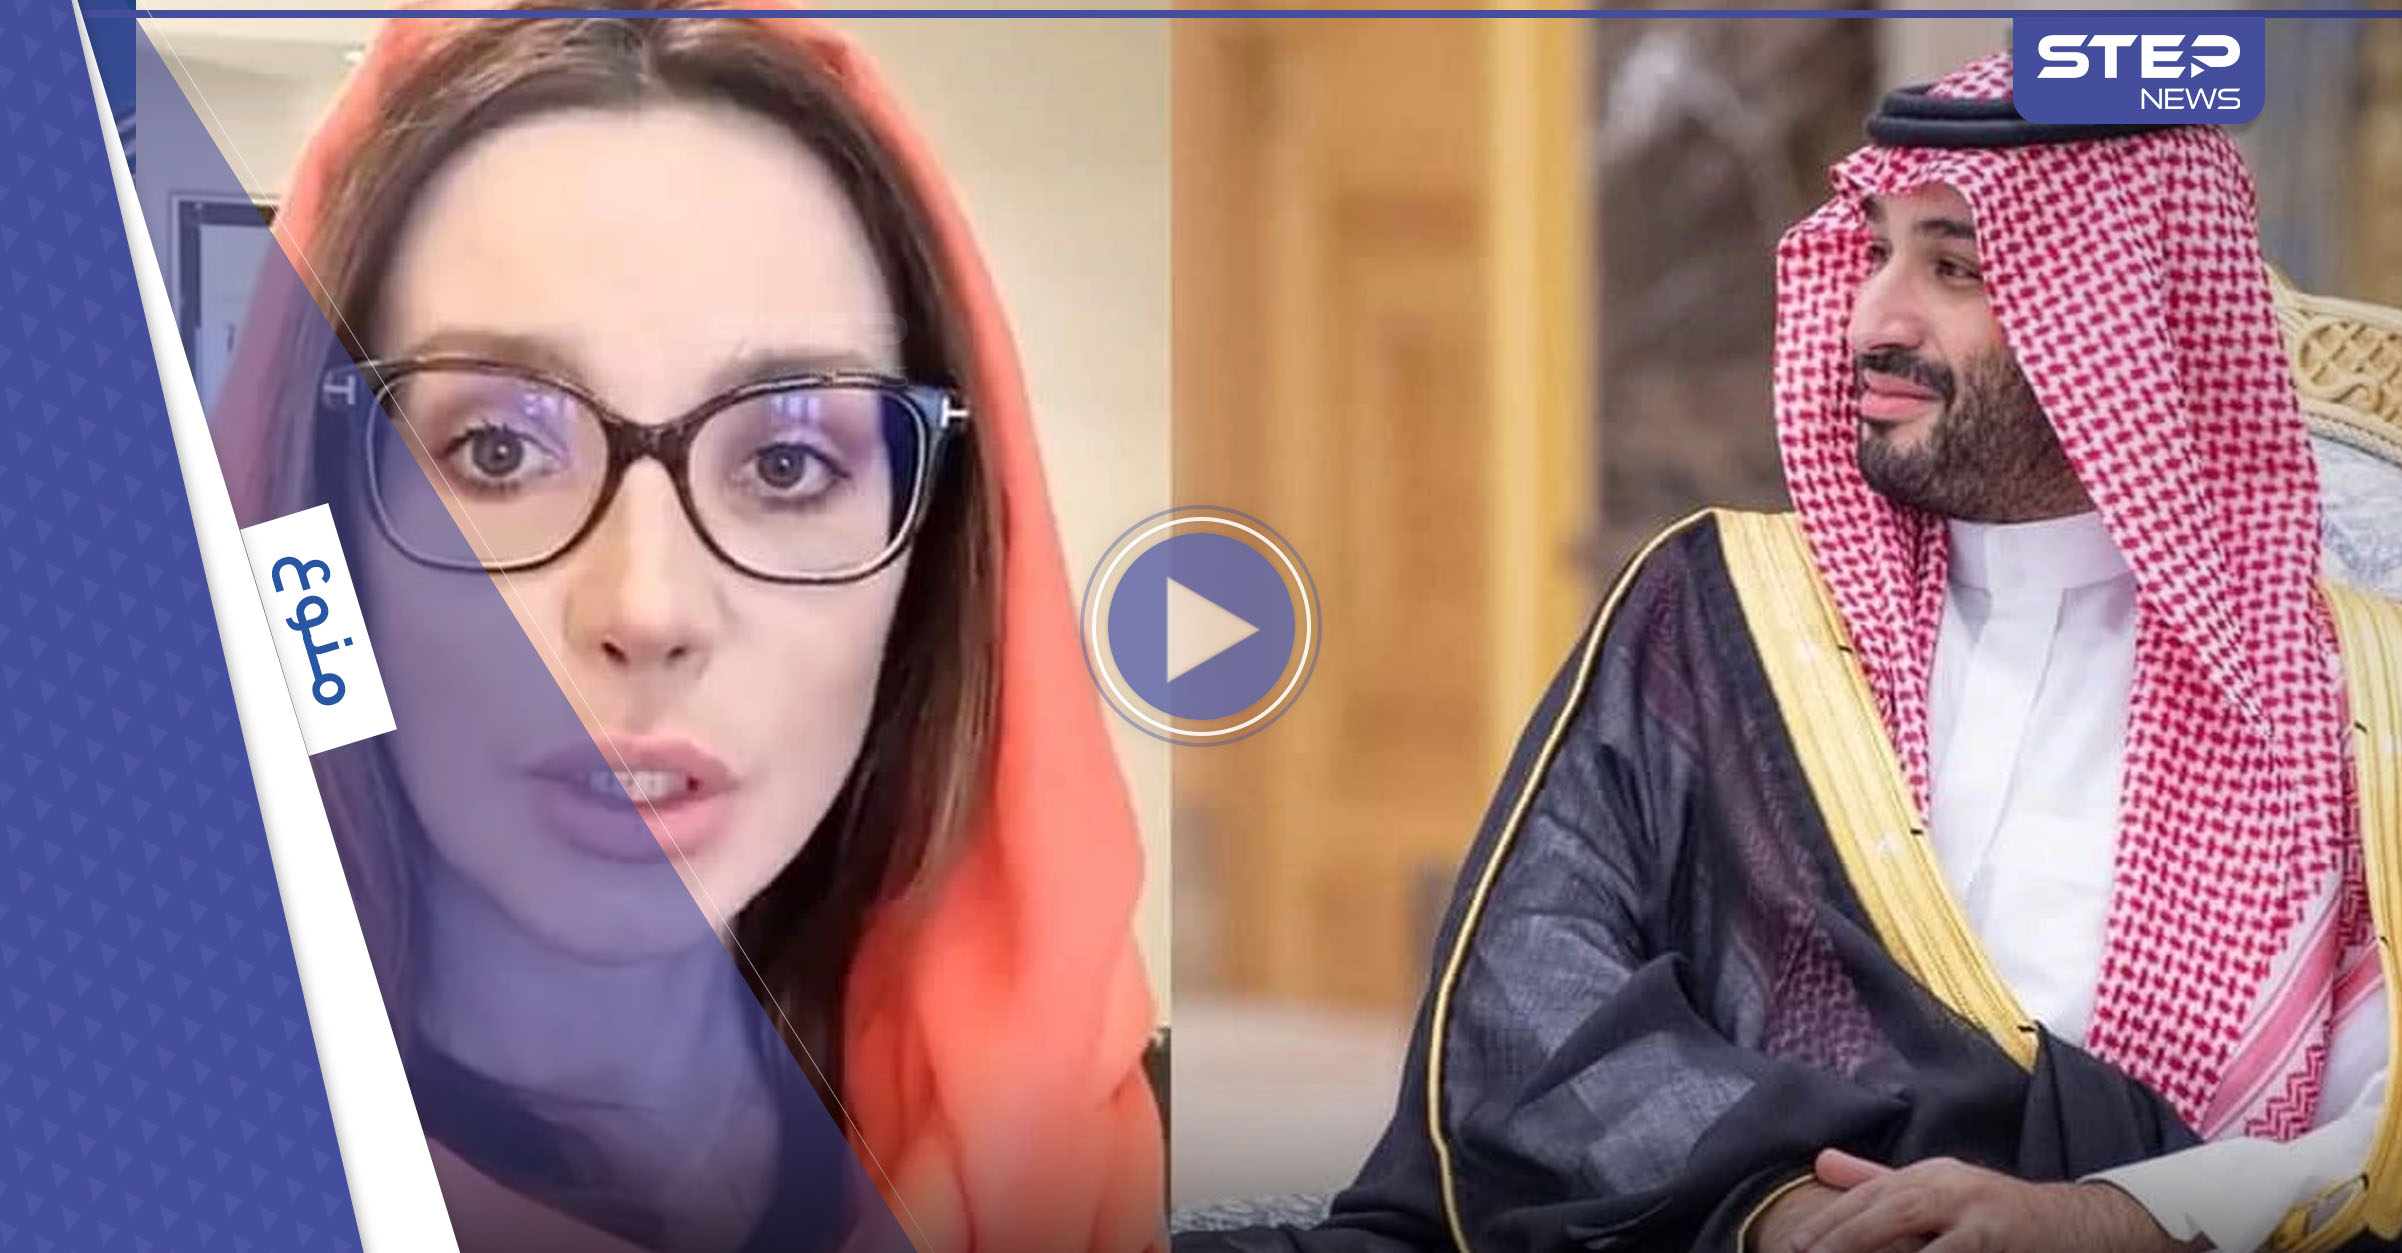 شاهد|| أوكرانيّة "تناشد" وليّ العهد السعودي مساعدتها: امرأة تحب زوجها وتشعر بالقلق على سلامته (فيديو)